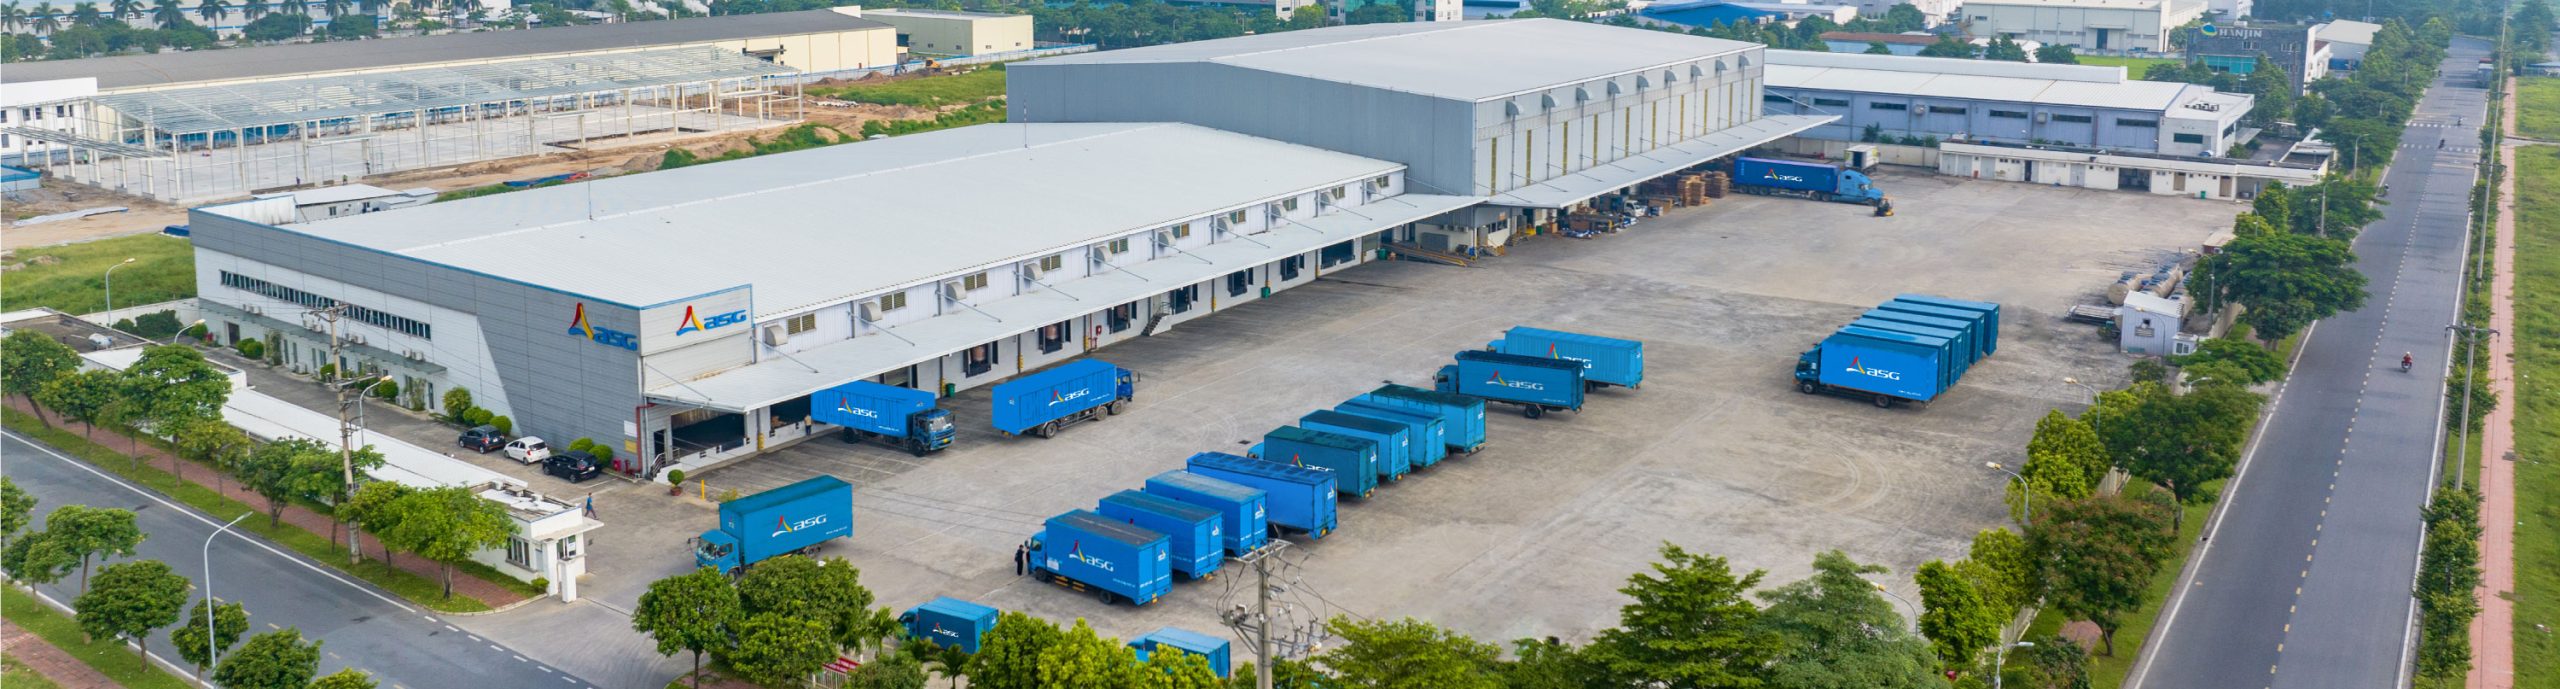 Công bố thông tin về việc phê duyệt việc ký hợp đồng nguyên tắc cung cấp dịch vụ logistics với Công ty CP Dịch vụ Sân Bay Sài Gòn và Công ty TNHH Vận tải ASG.